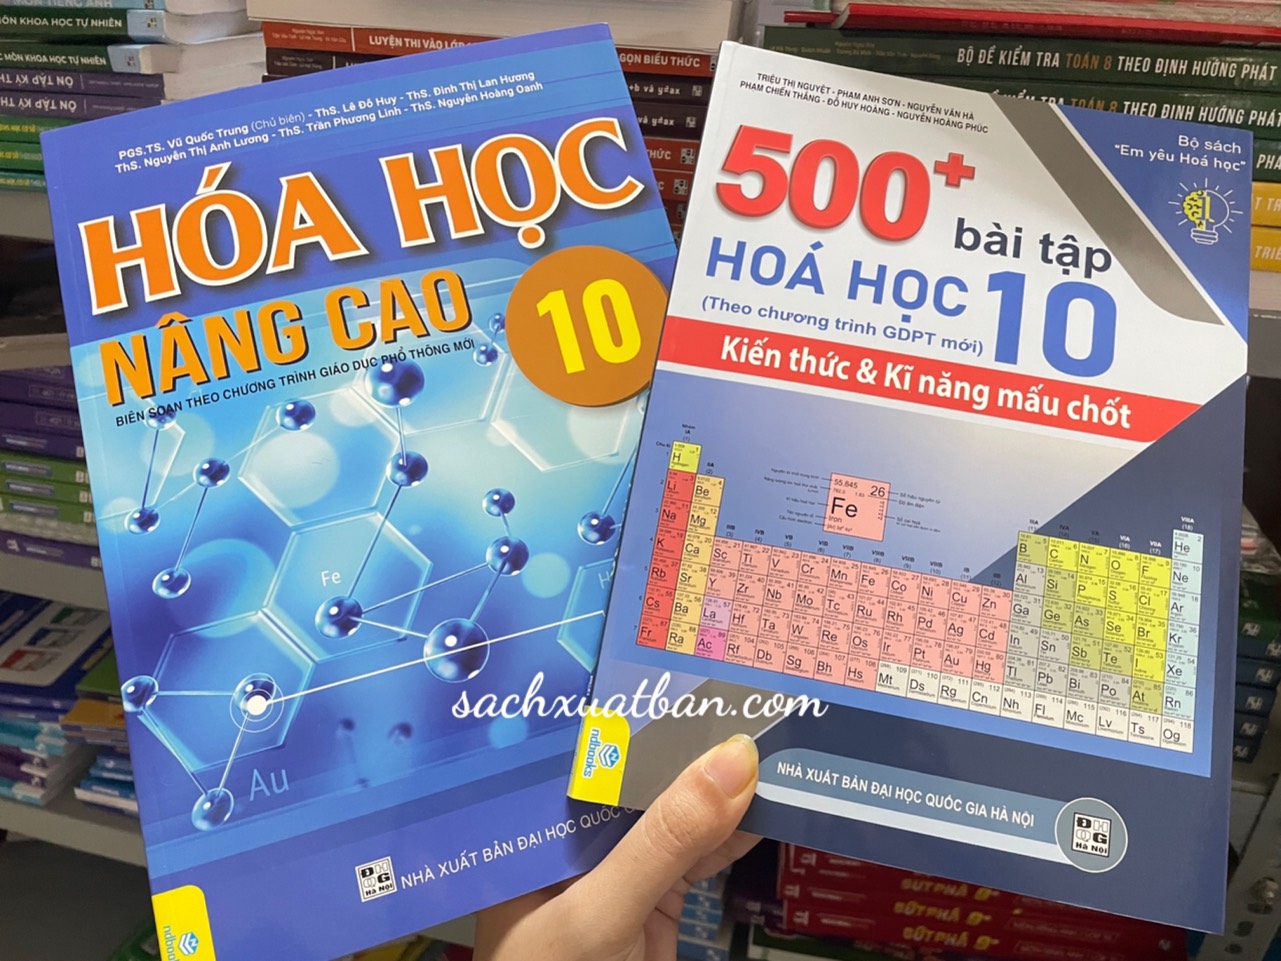 Combo 2 cuốn Hóa Học Nâng Cao 10 và 500+ Bài Tập Hóa Học 10 (Biên Soạn theo chương trình Giáo dục phổ thông mới)